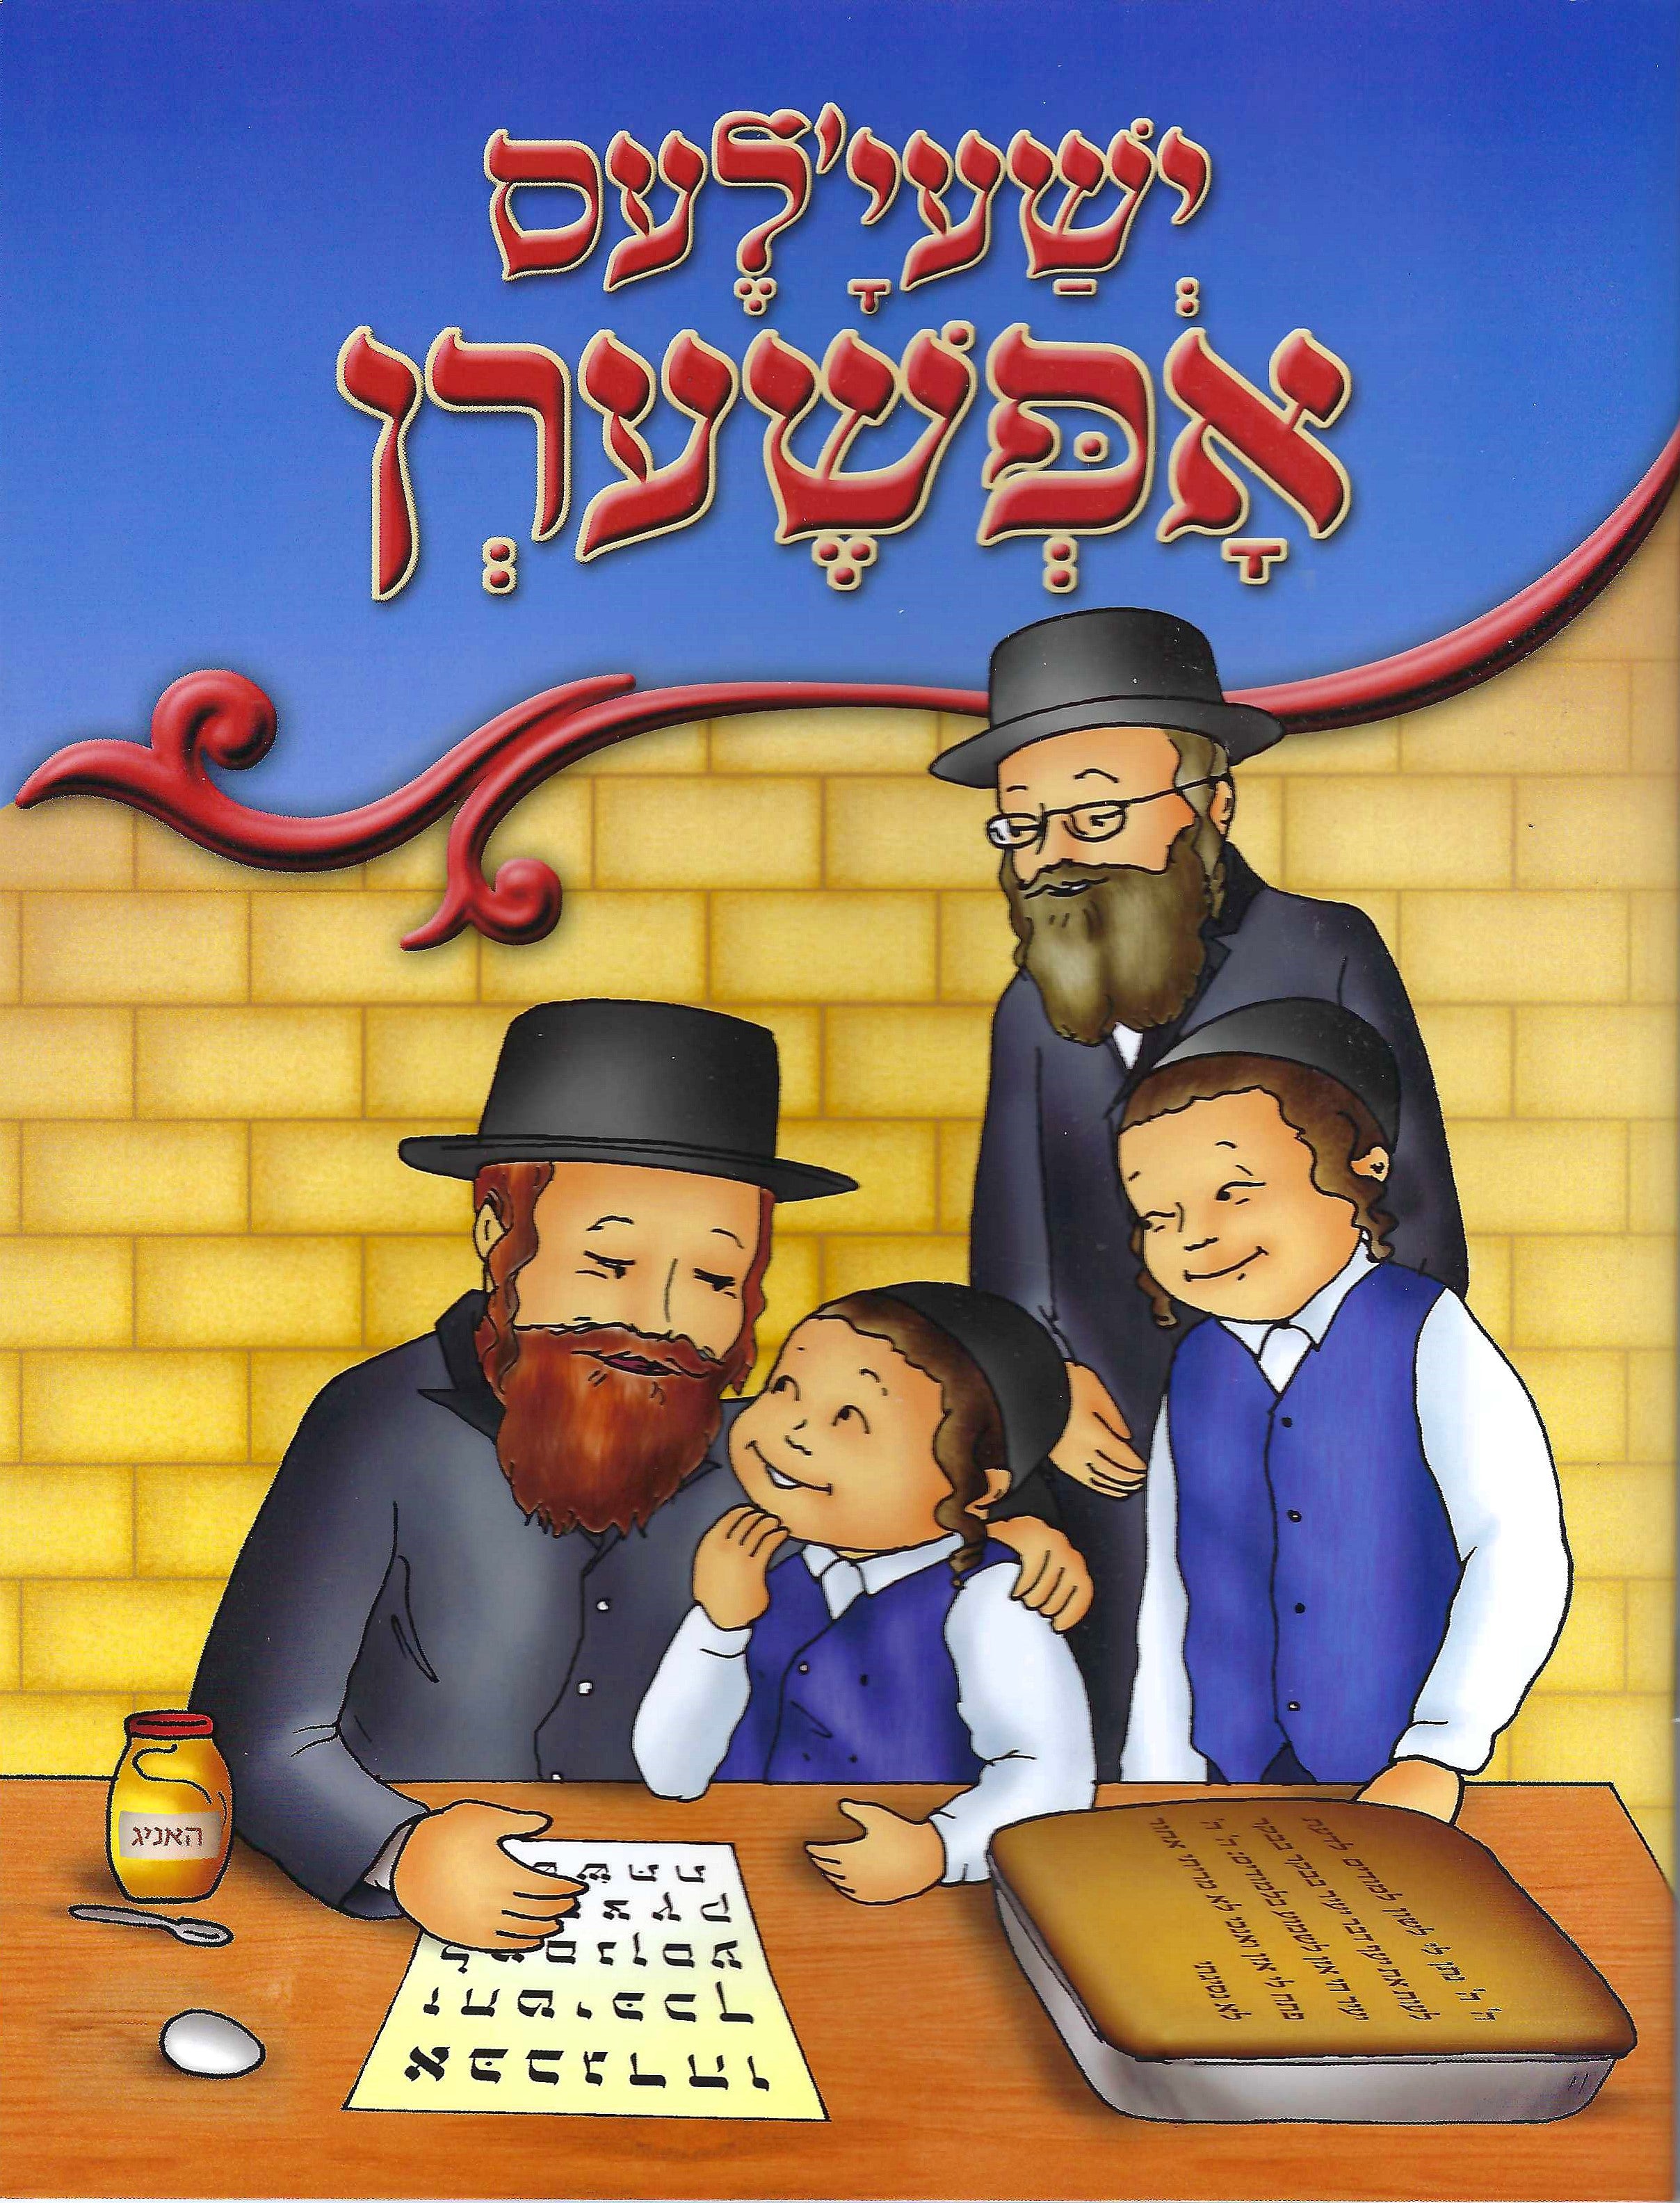 Yeshayala's Upsherin Book